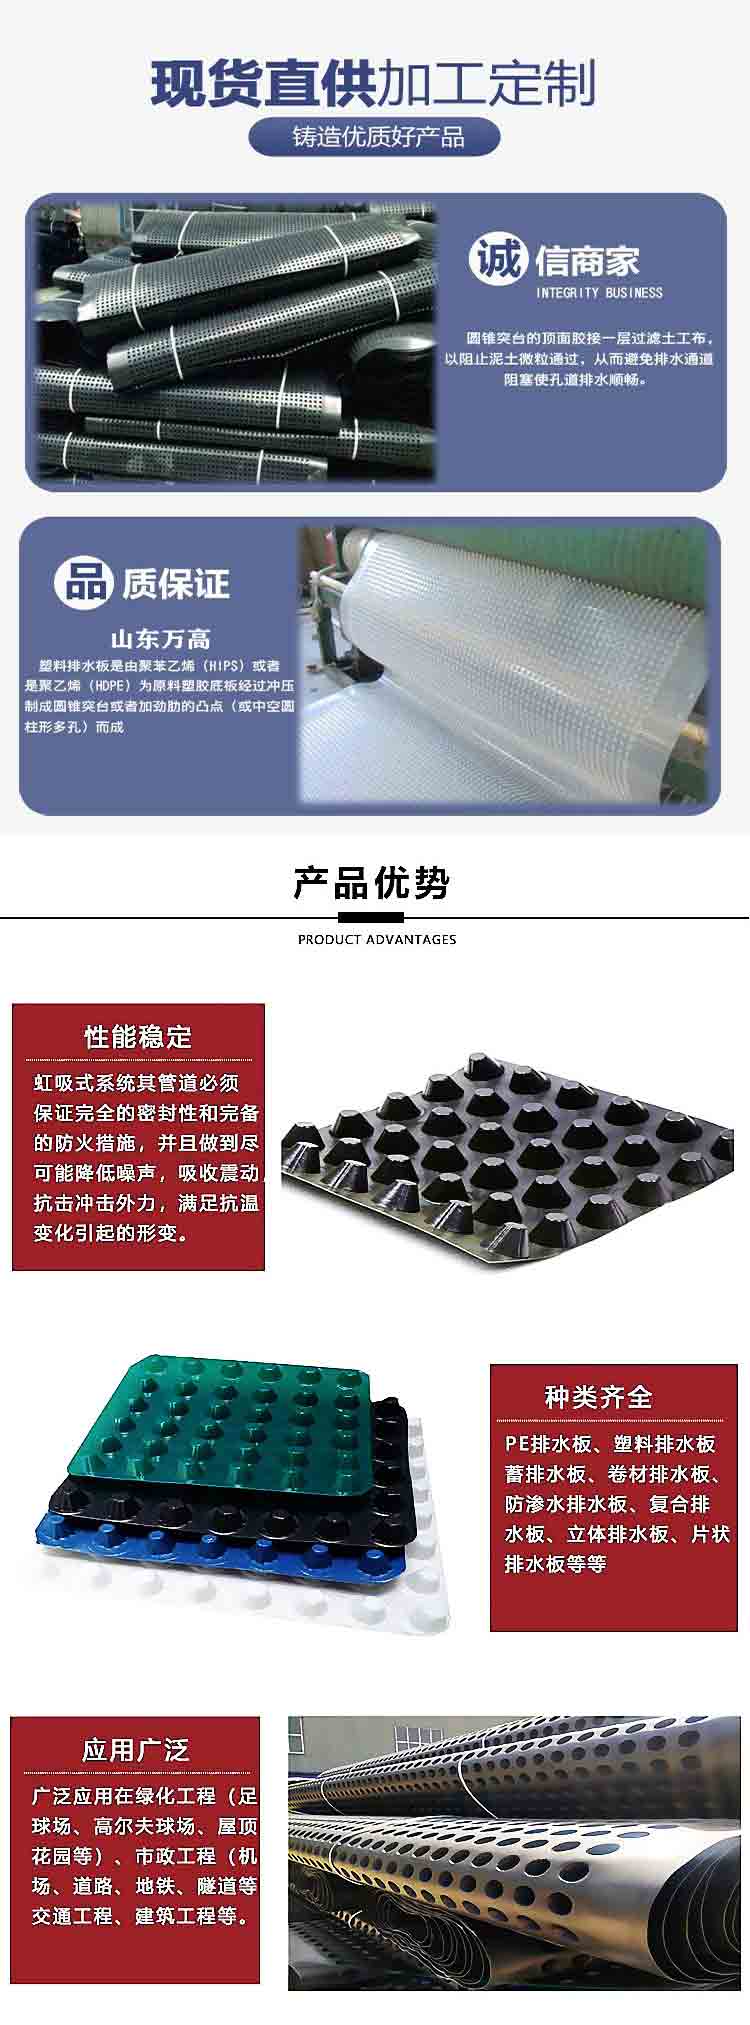 欢迎访问郑州-塑料排水板郑州-有限公司